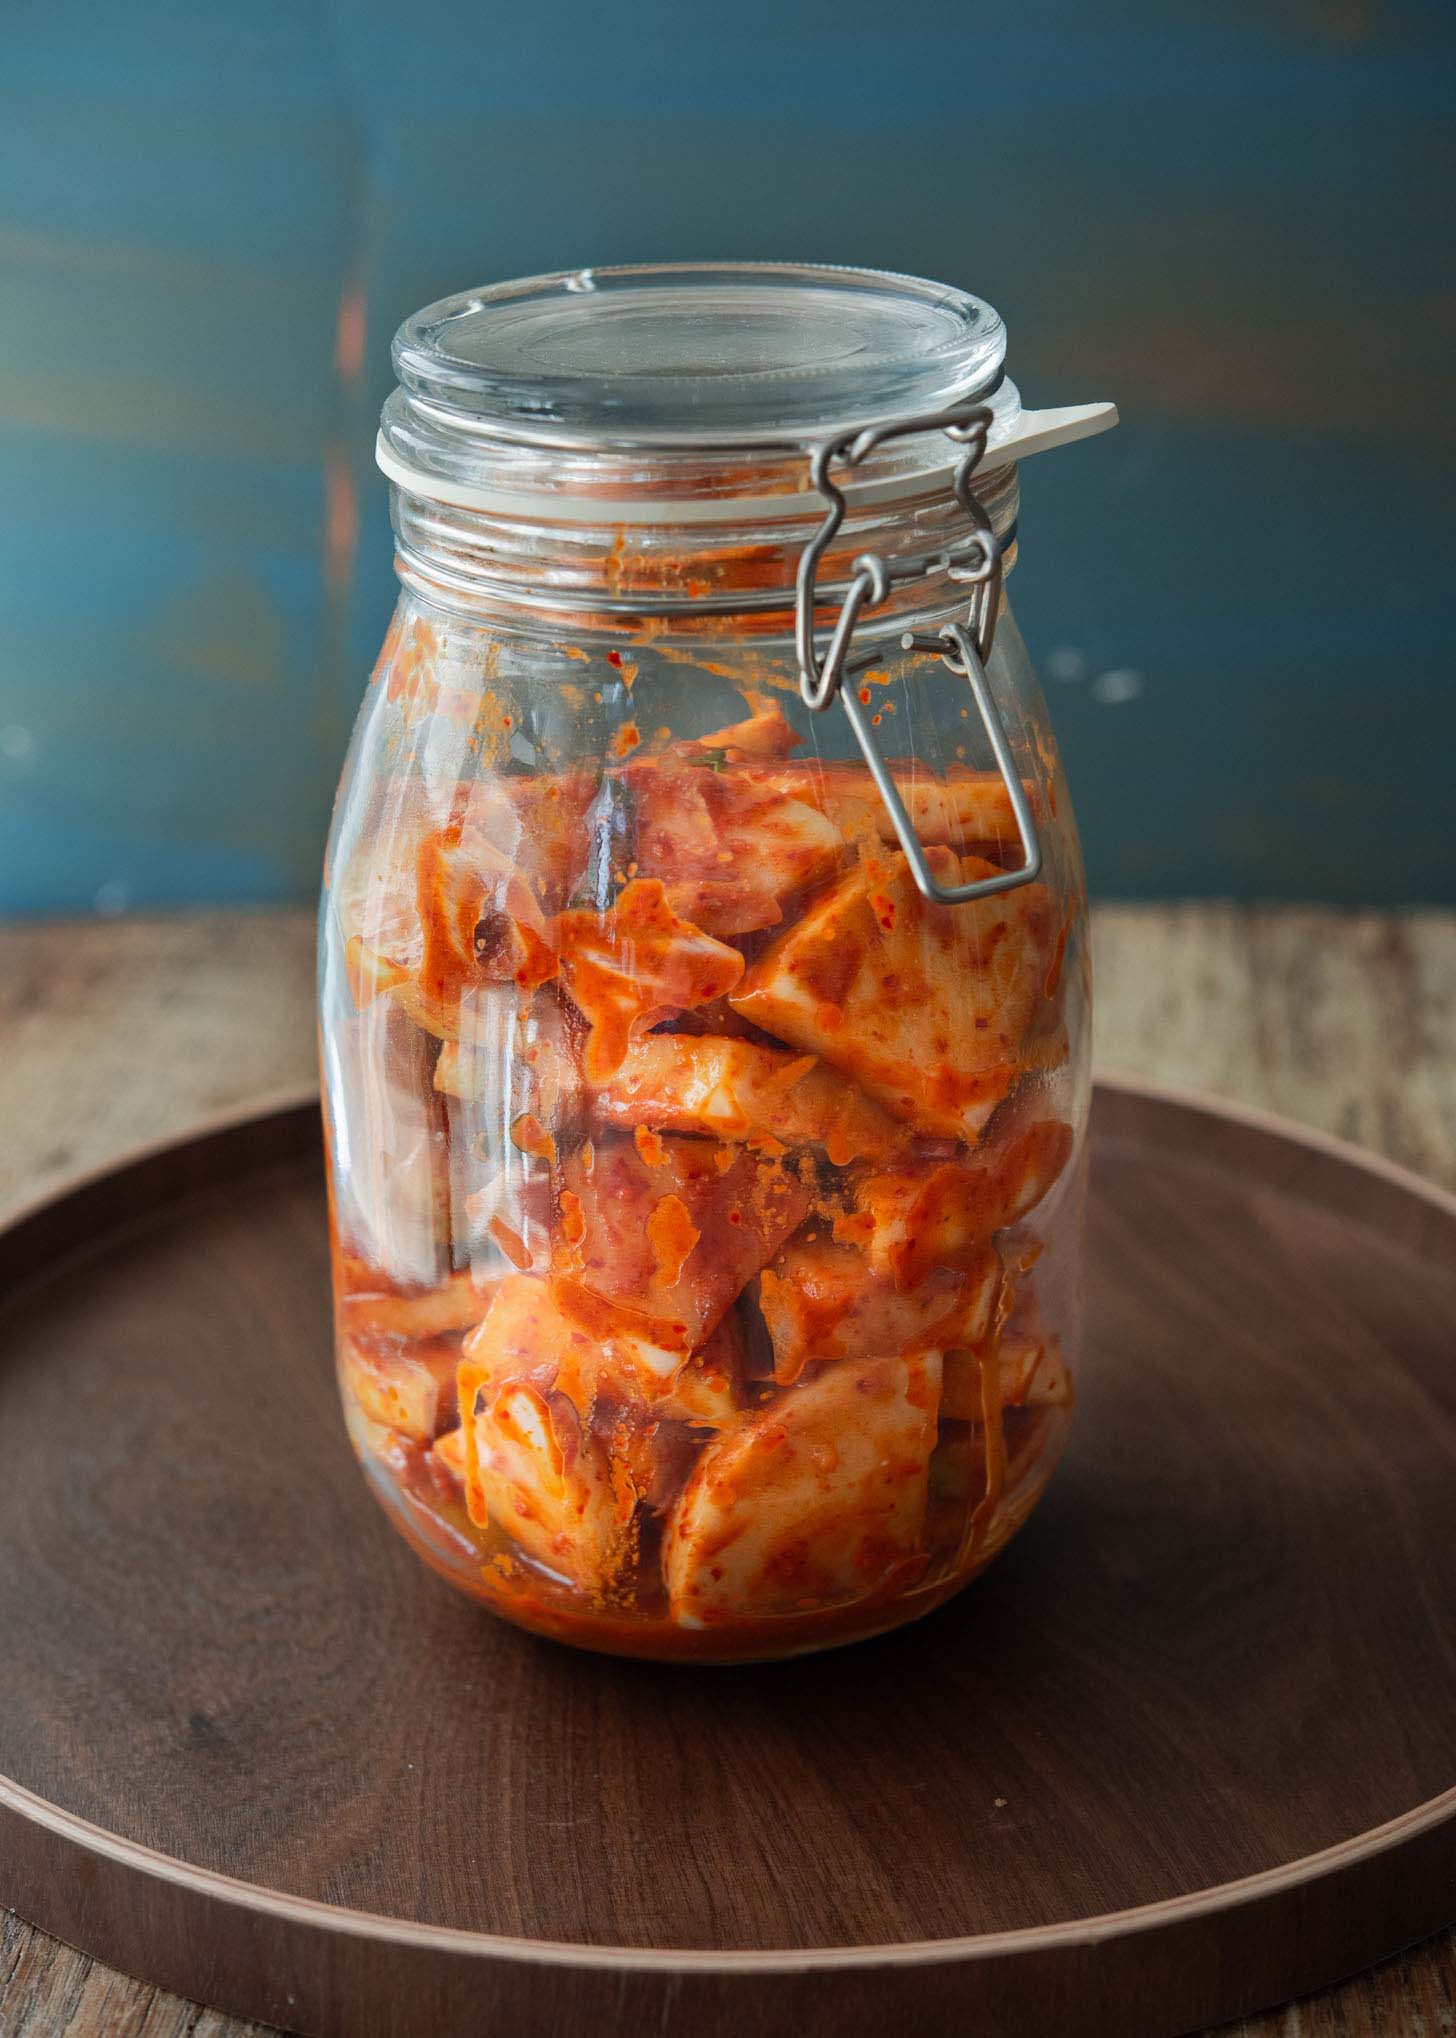 Radish kimchi fermenting in a glass jar.